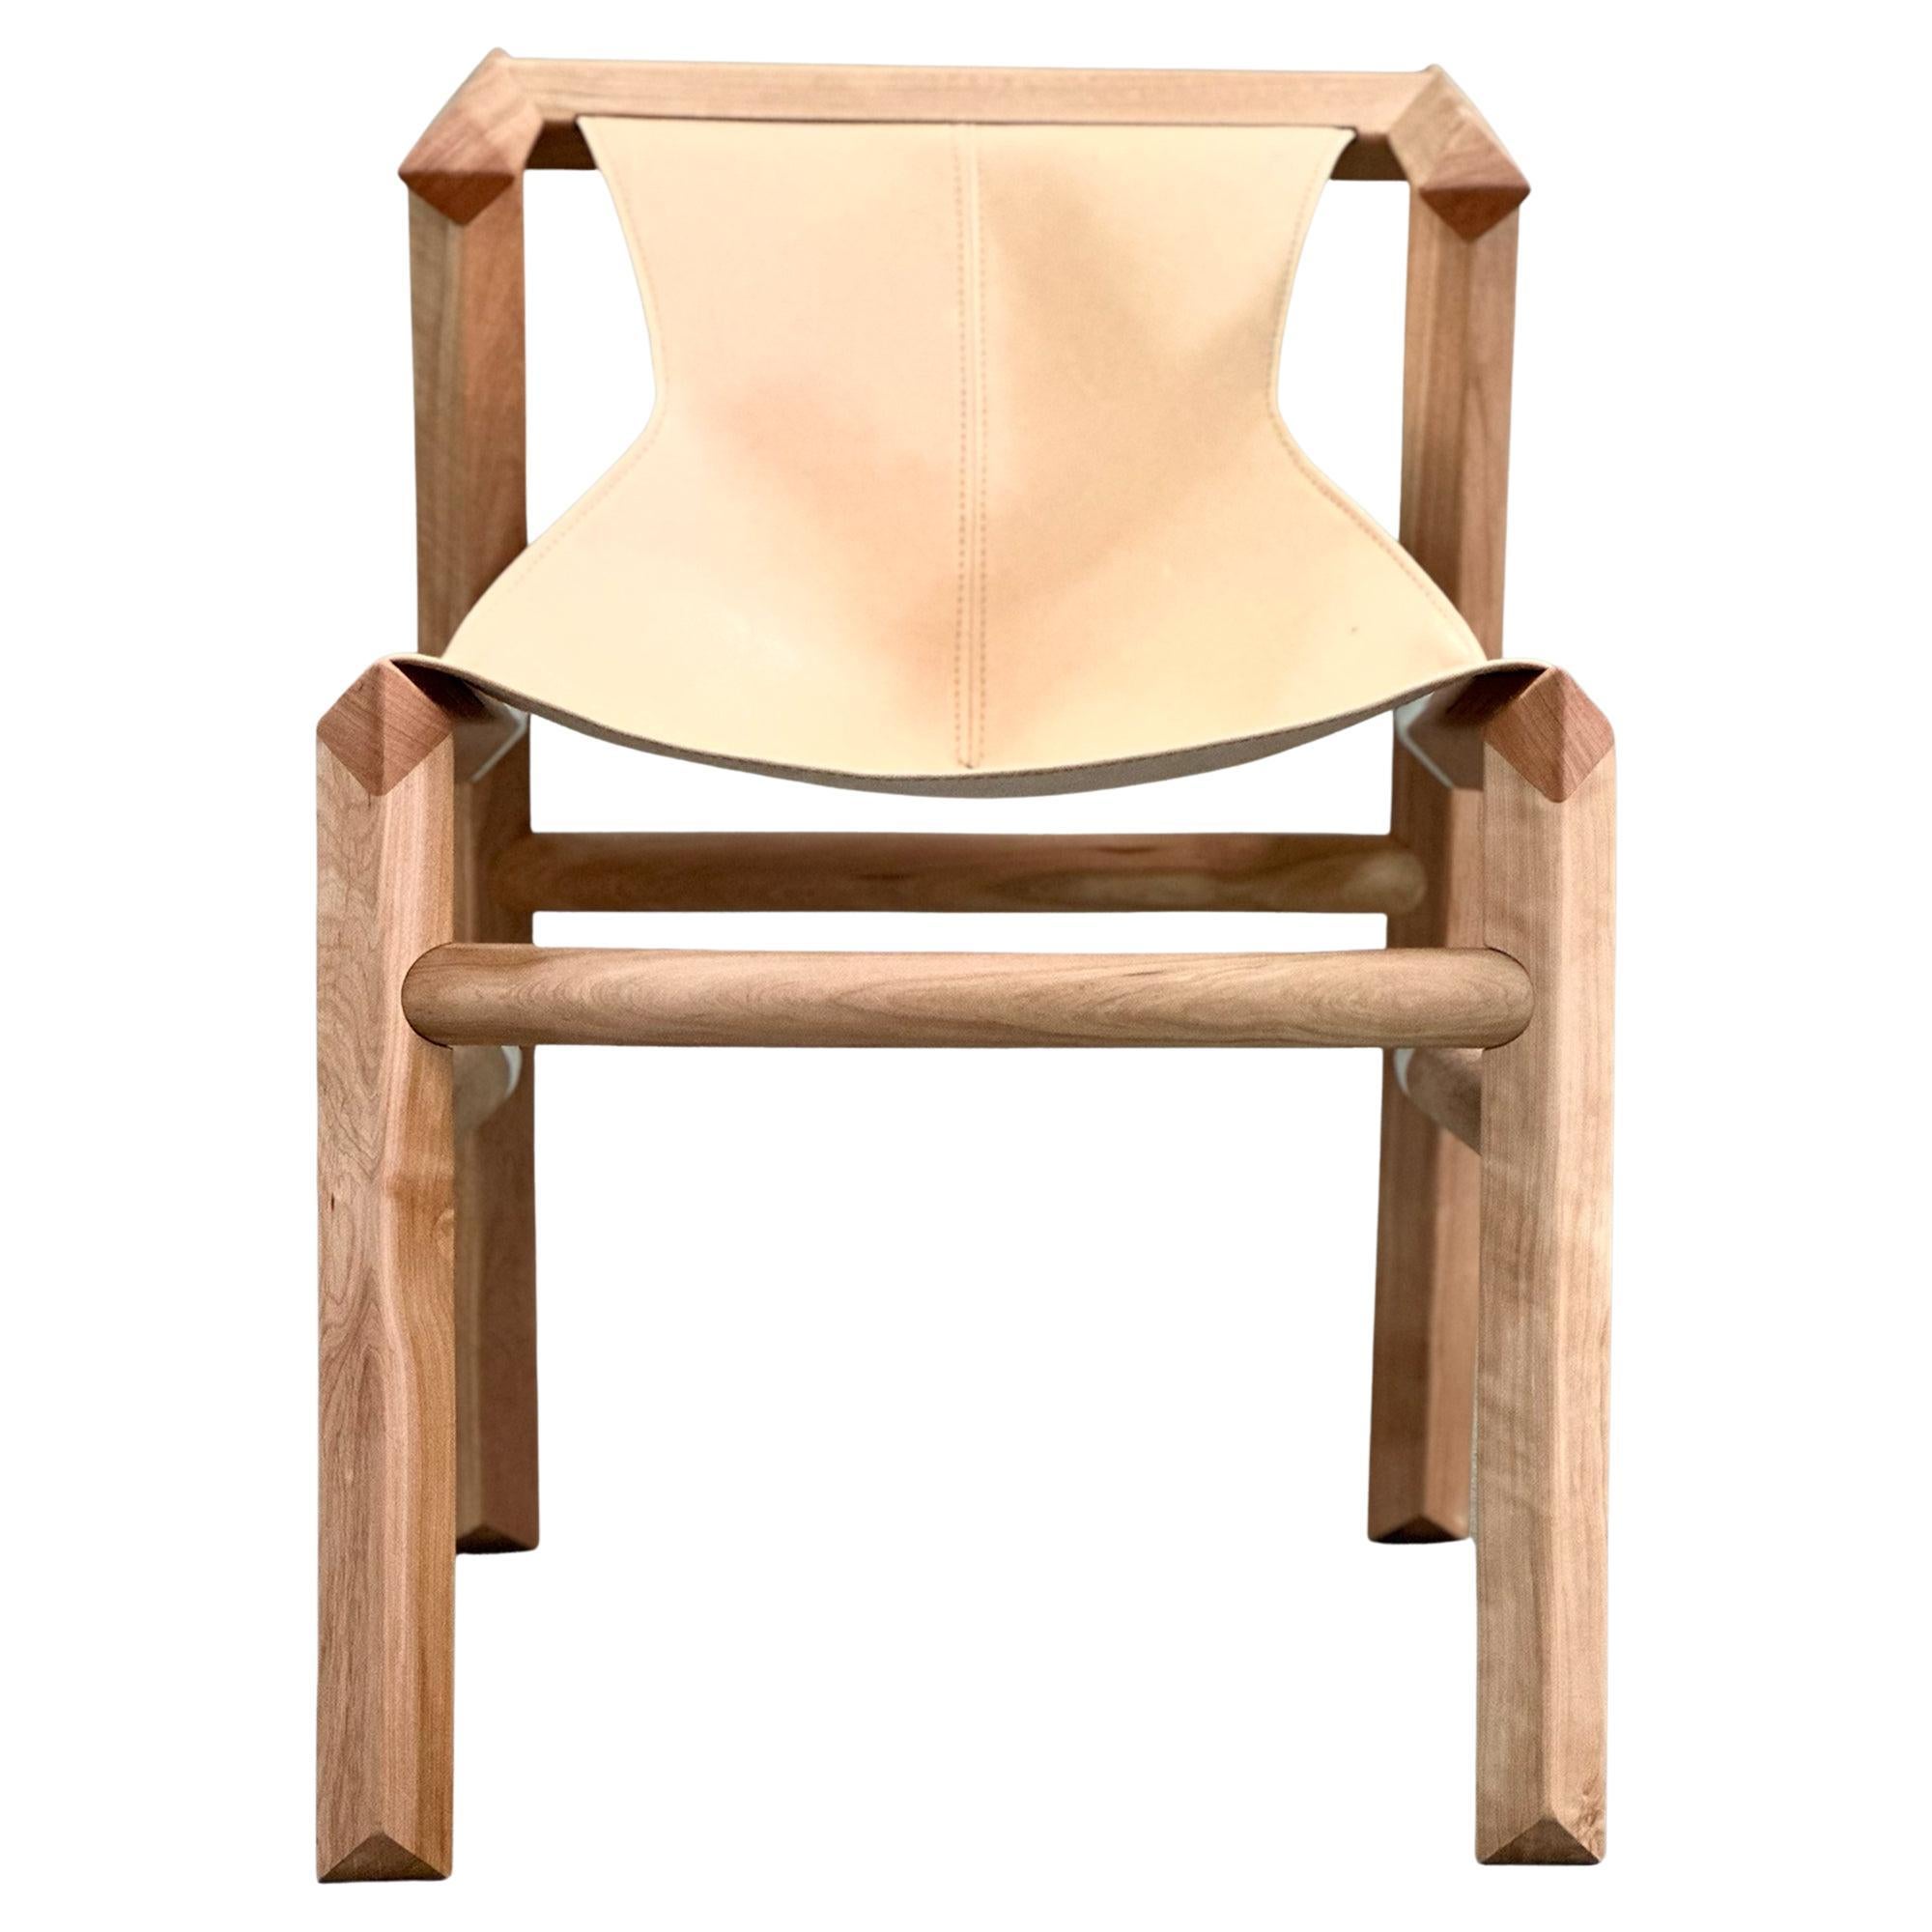 Le langage de conception et le processus de construction de la chaise sont basés sur la philosophie du slow made, combinant des techniques traditionnelles et modernes, des joints imprimés en 3D, la fabrication numérique et le processus de